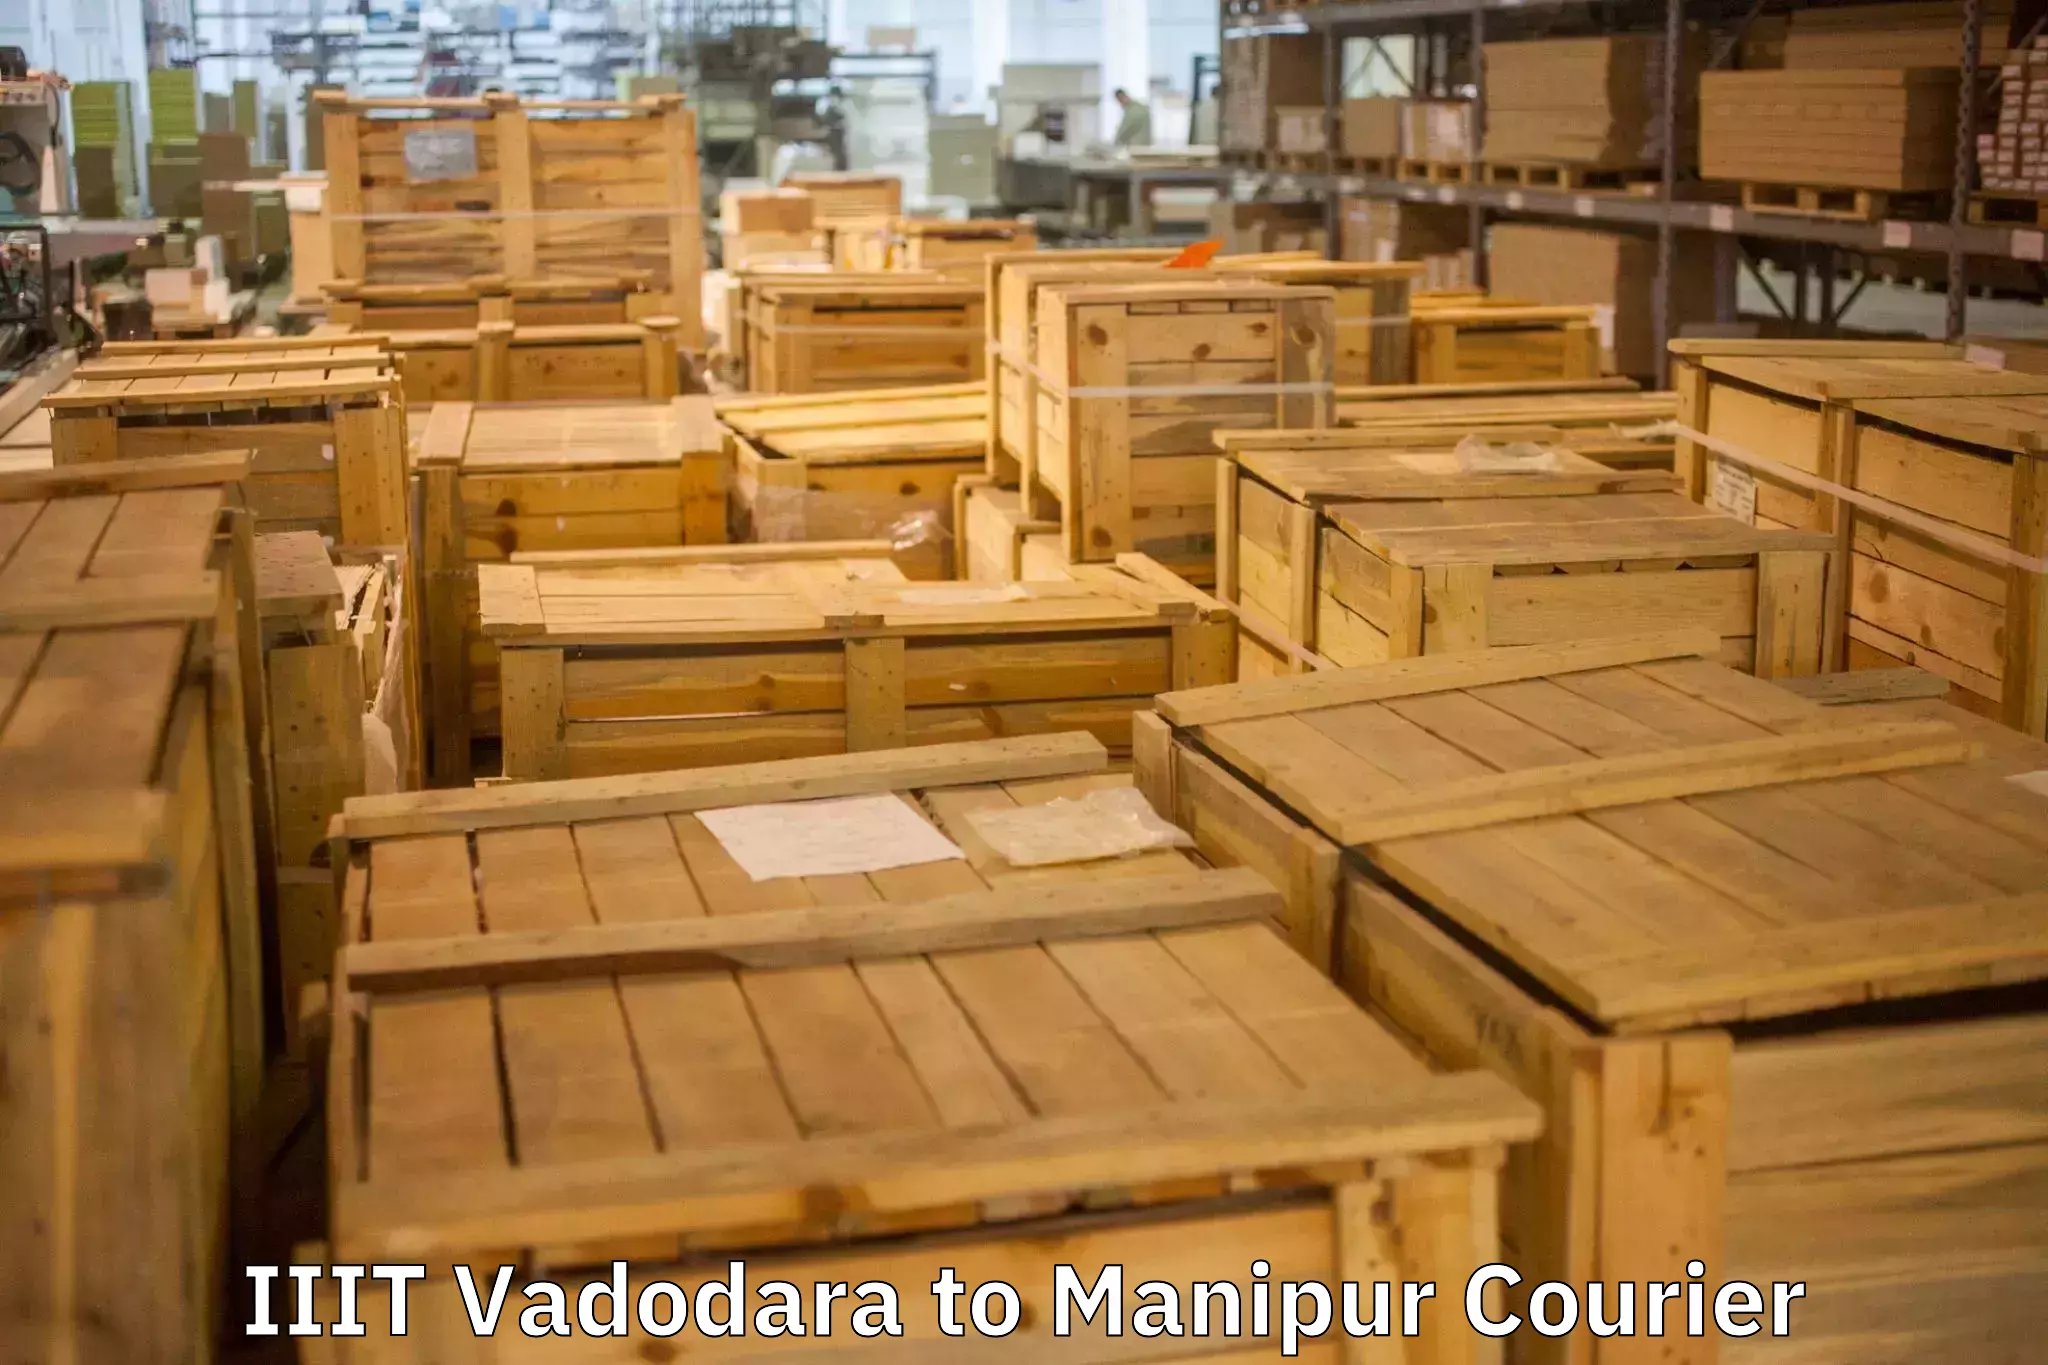 Furniture relocation services IIIT Vadodara to Chandel